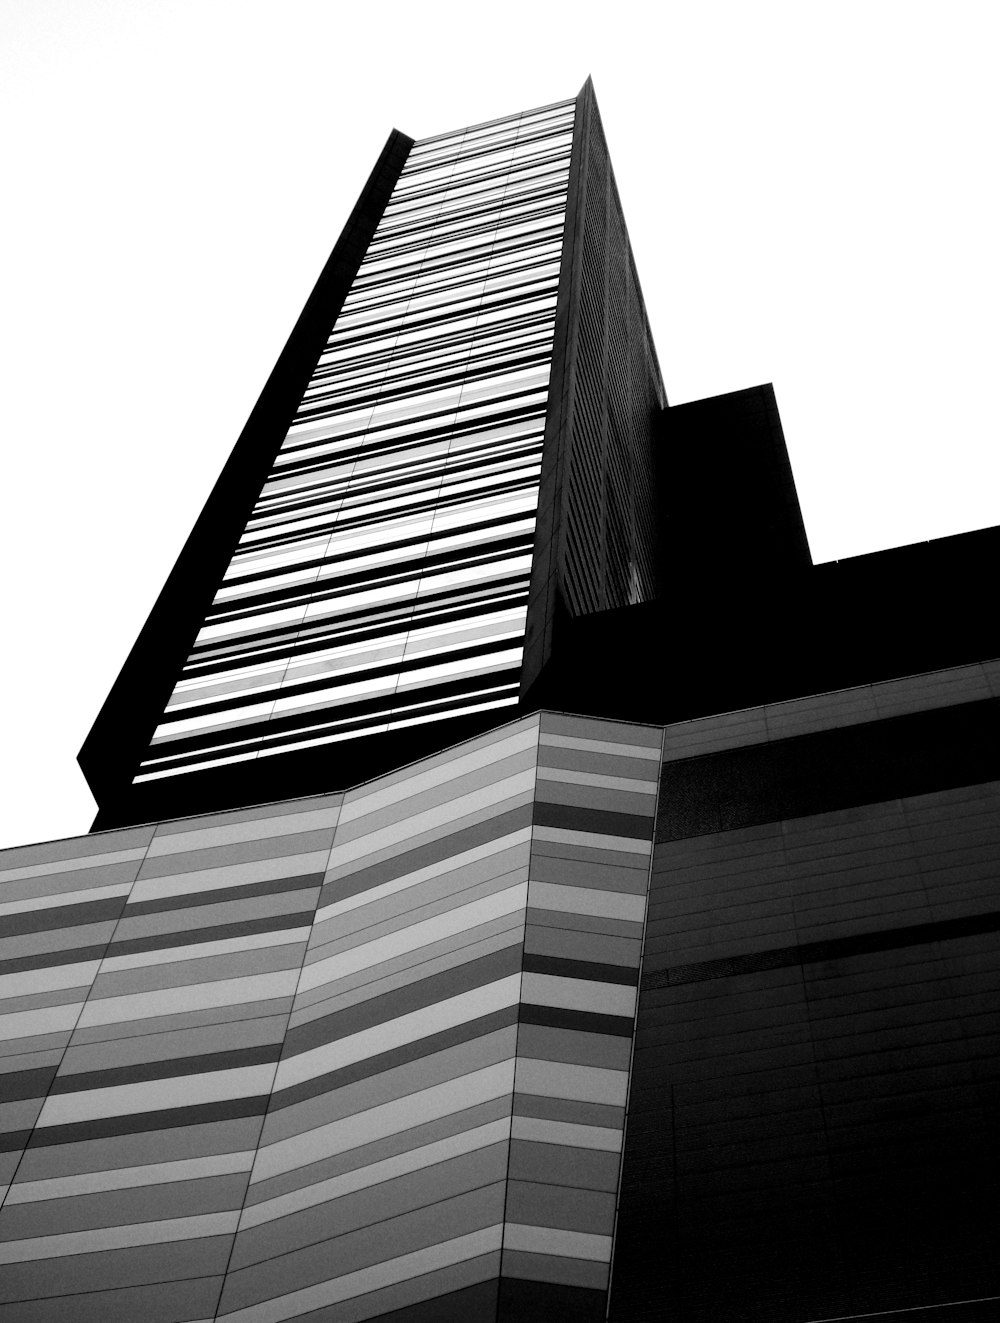 Photographie en contre-plongée d’un immeuble de grande hauteur